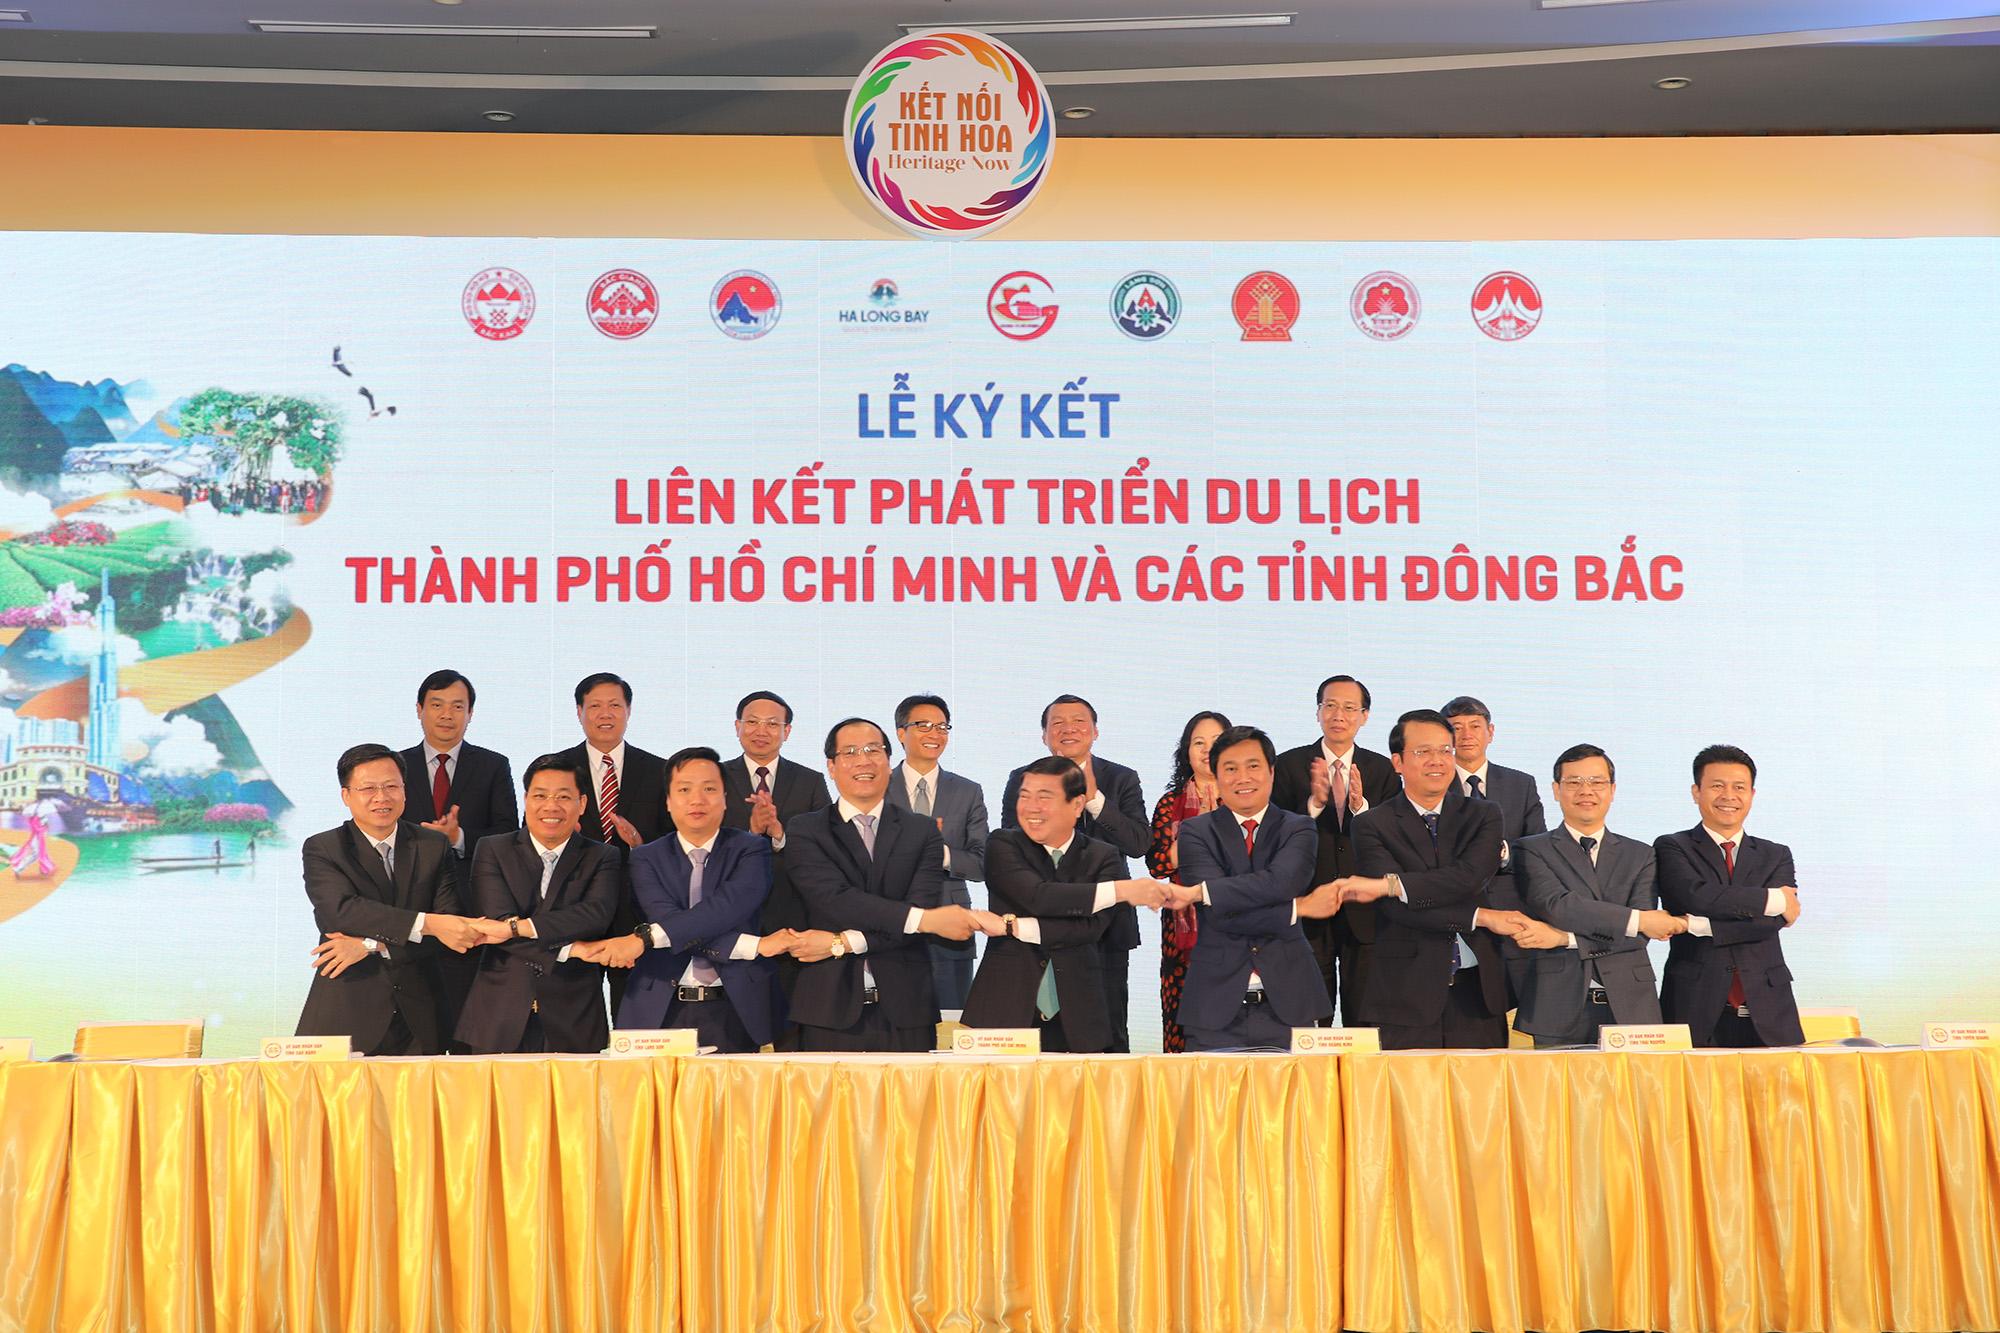 Lãnh đạo các địa phương ký kết Thỏa thuận hợp tác du lịch giữa TP Hồ Chí Minh và các tỉnh Đông Bắc